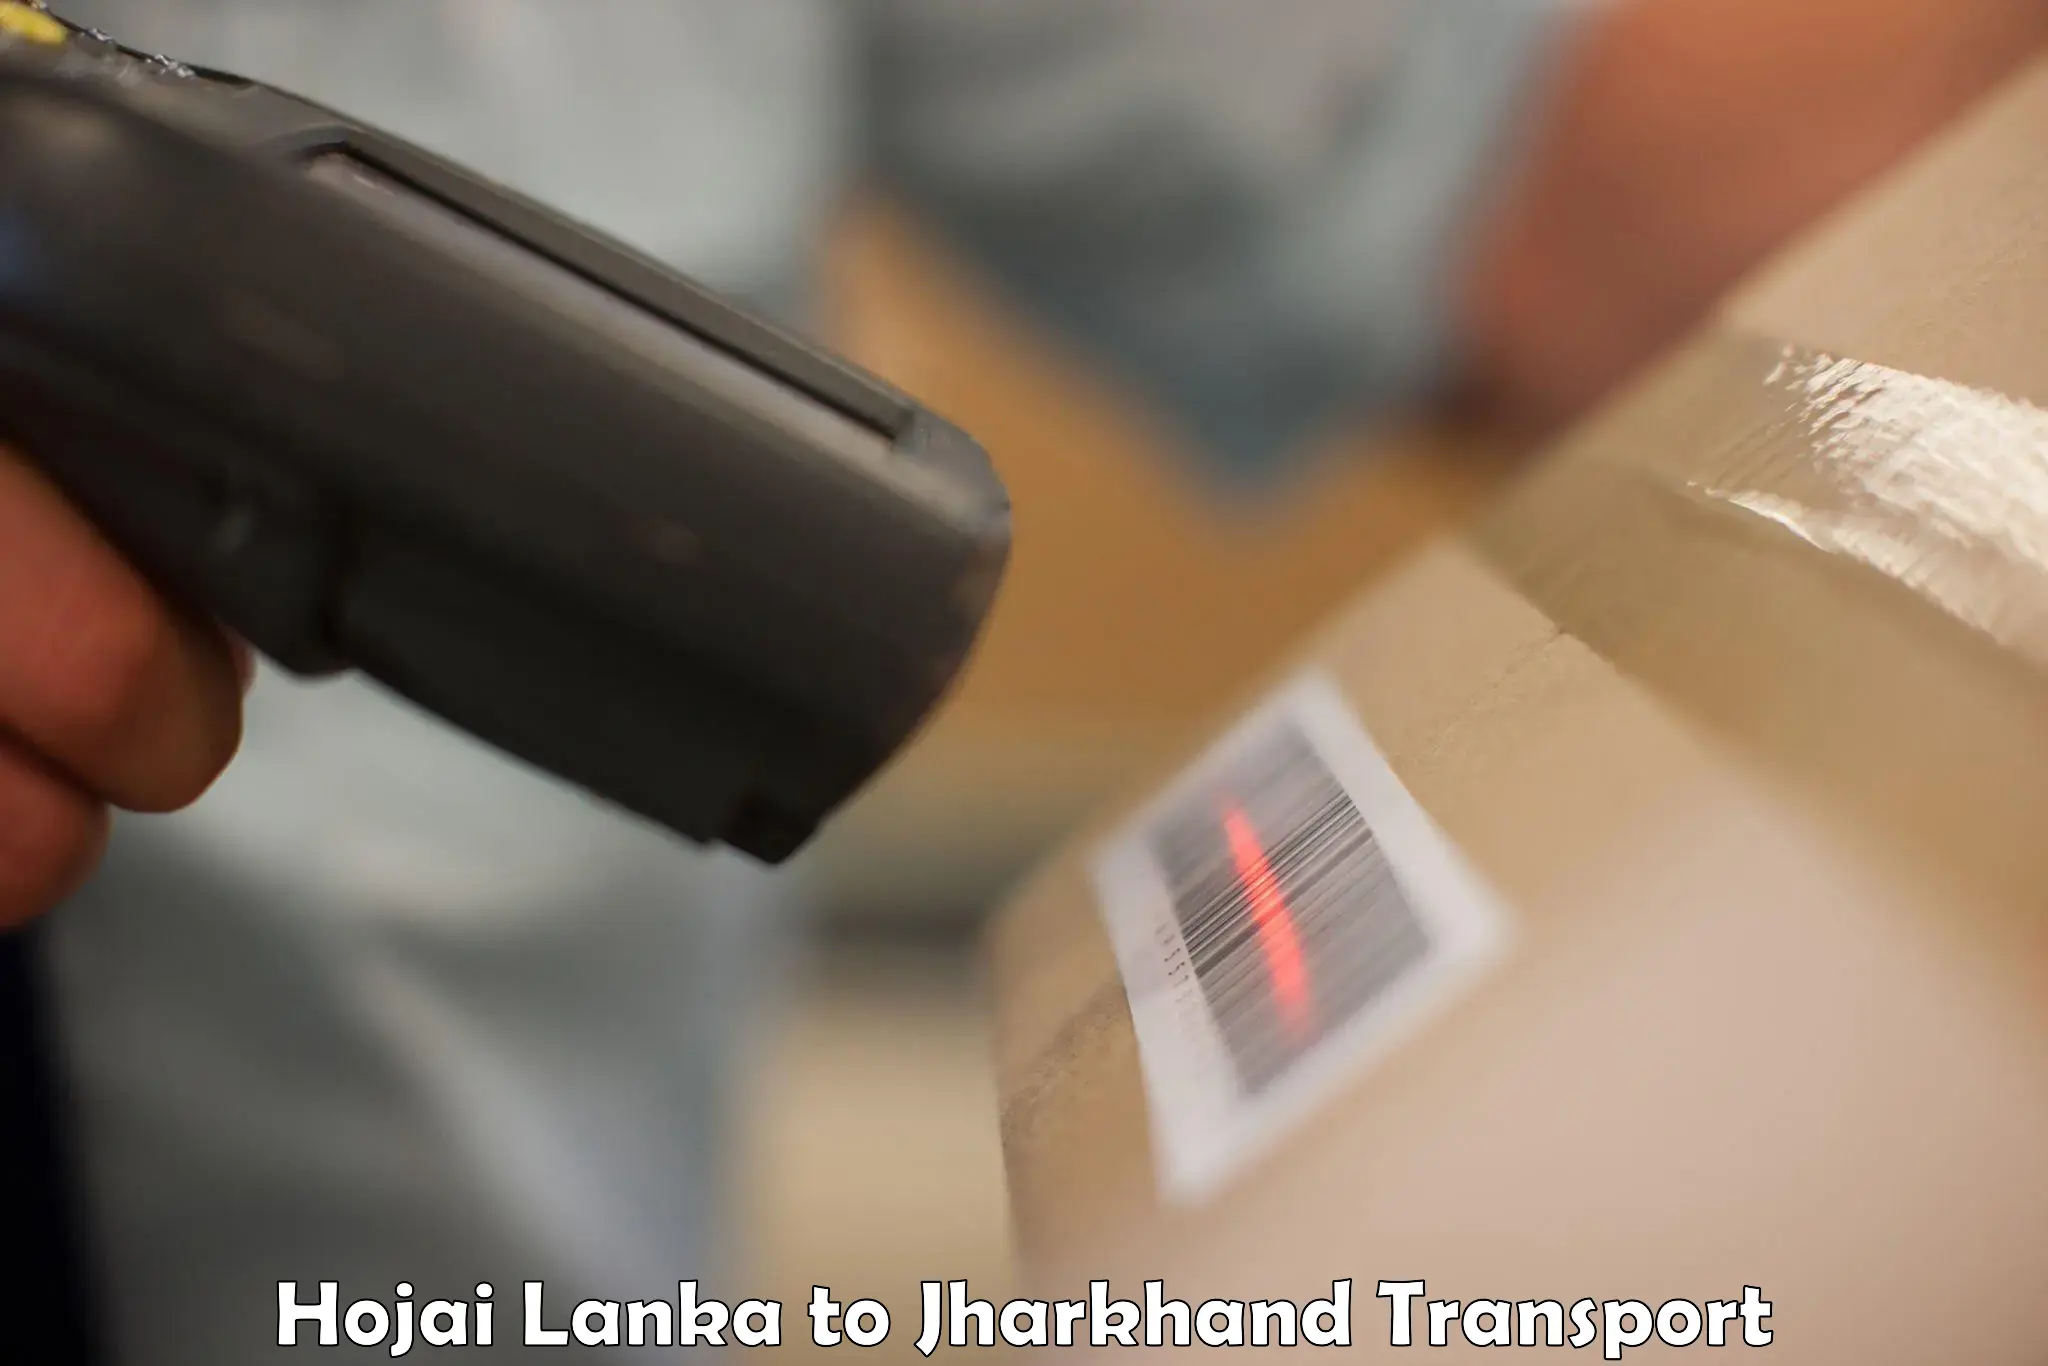 Material transport services Hojai Lanka to Chakuliya